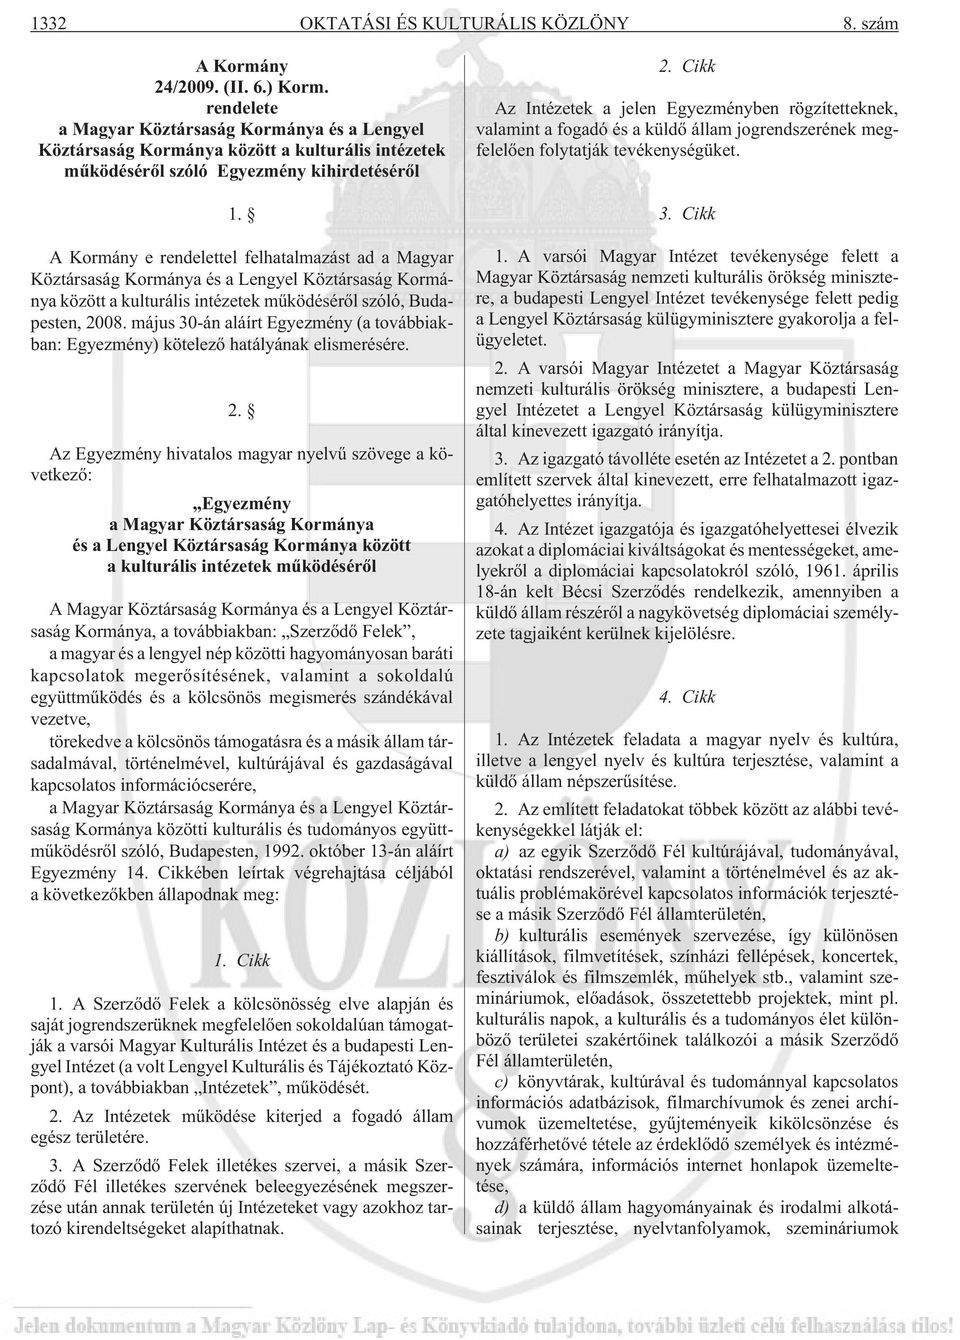 A Kormány e rendelettel felhatalmazást ad a Magyar Köztársaság Kormánya és a Lengyel Köztársaság Kormánya között a kulturális intézetek mûködésérõl szóló, Budapesten, 2008.